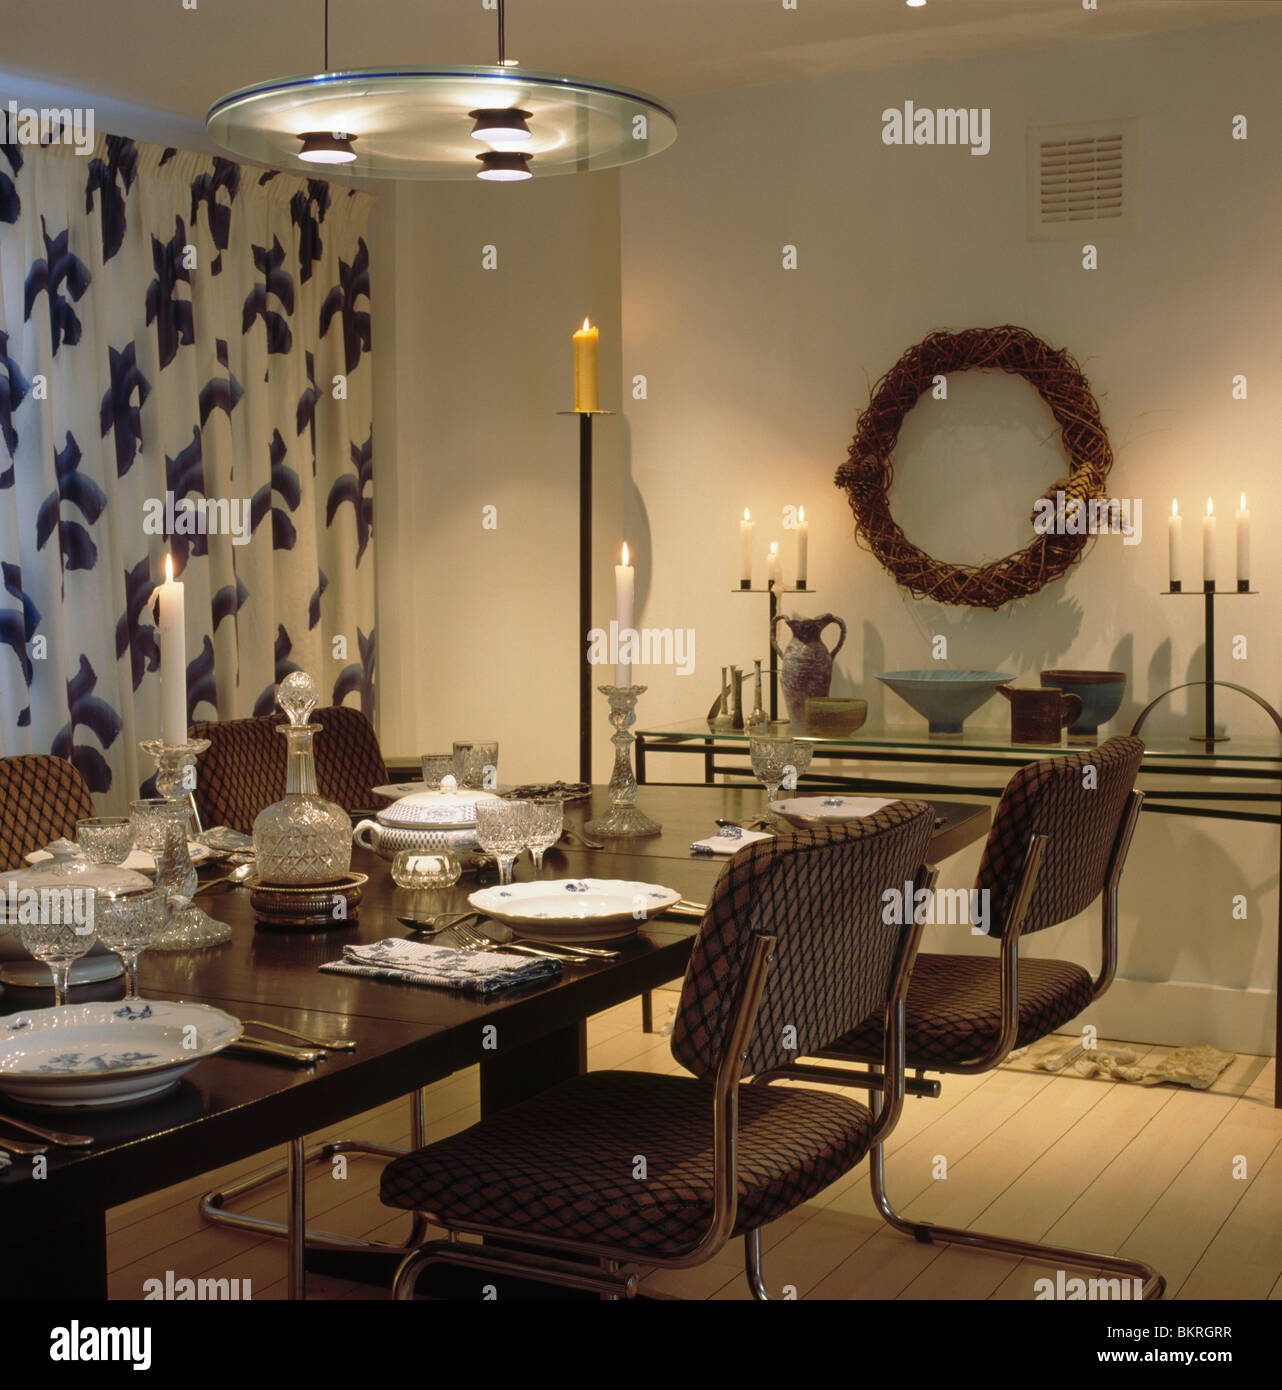 Luce circolare sopra il raccordo tavola nera in sala da pranzo con nero+bianco tende a motivi geometrici candele accese sul tavolo console Foto Stock